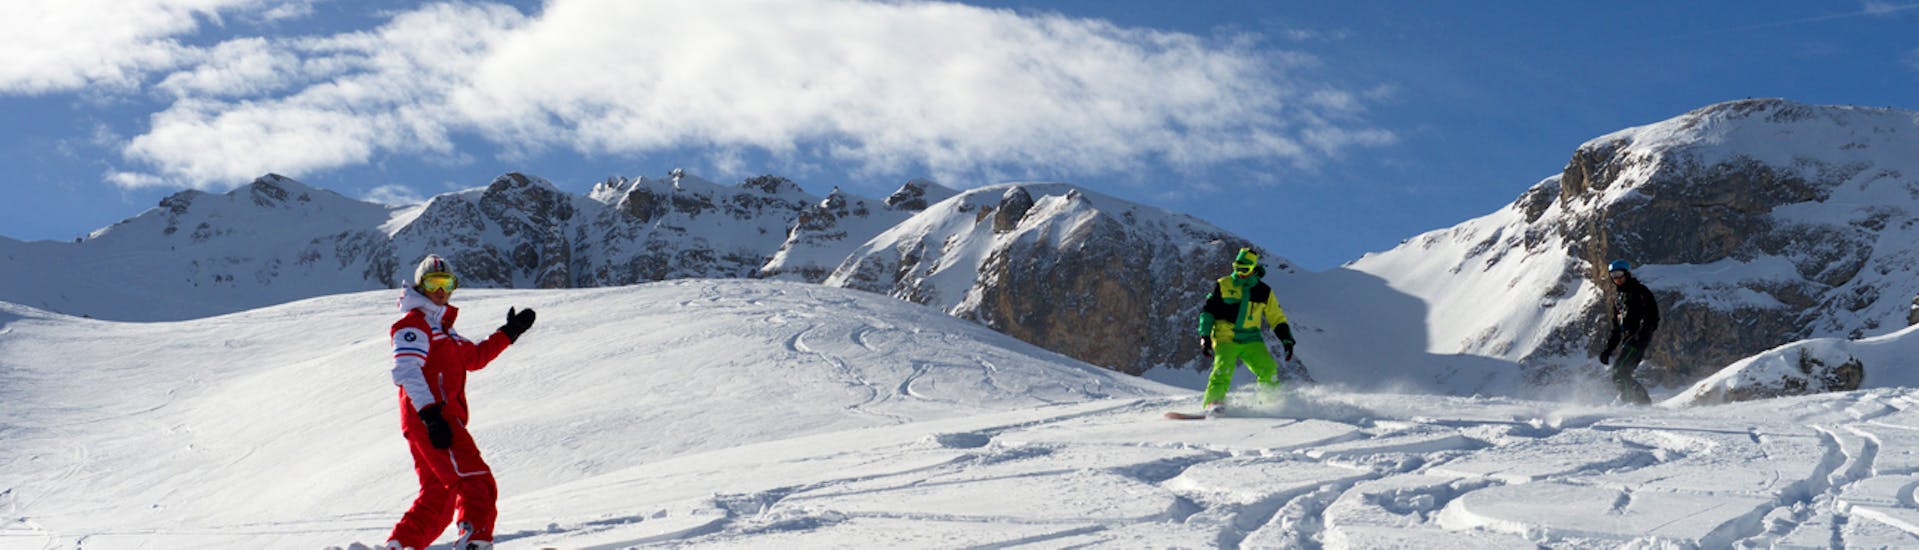 Ein Snowboarder nutzt seine private Snowboardstunde mit dem ESF Courchevel 1650, um abseits der Piste zu fahren.